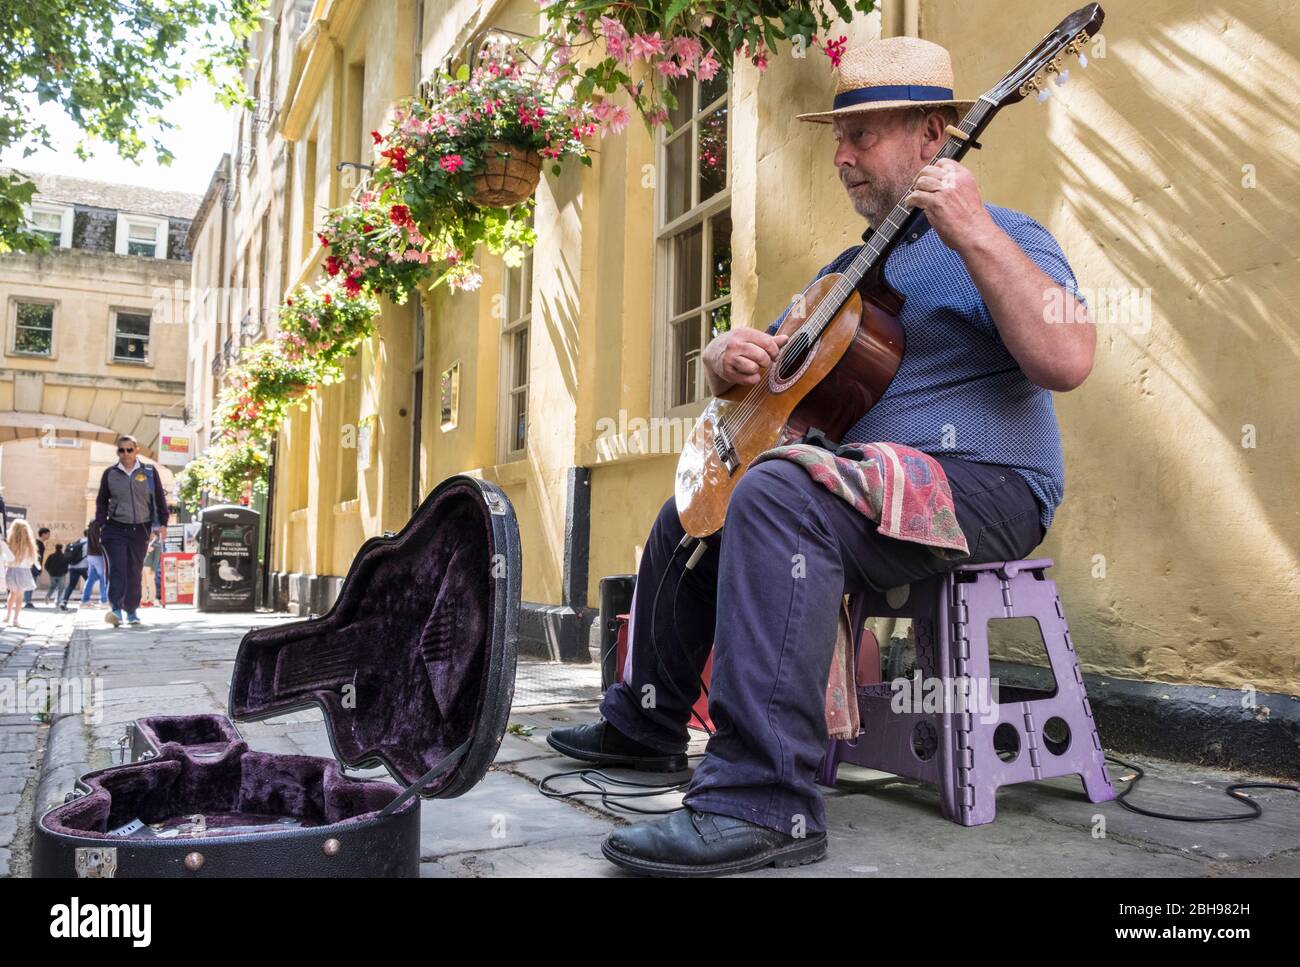 Busker suona la chitarra classica spagnola sulla strada, Bath, Somerset, England, GB, UK Foto Stock